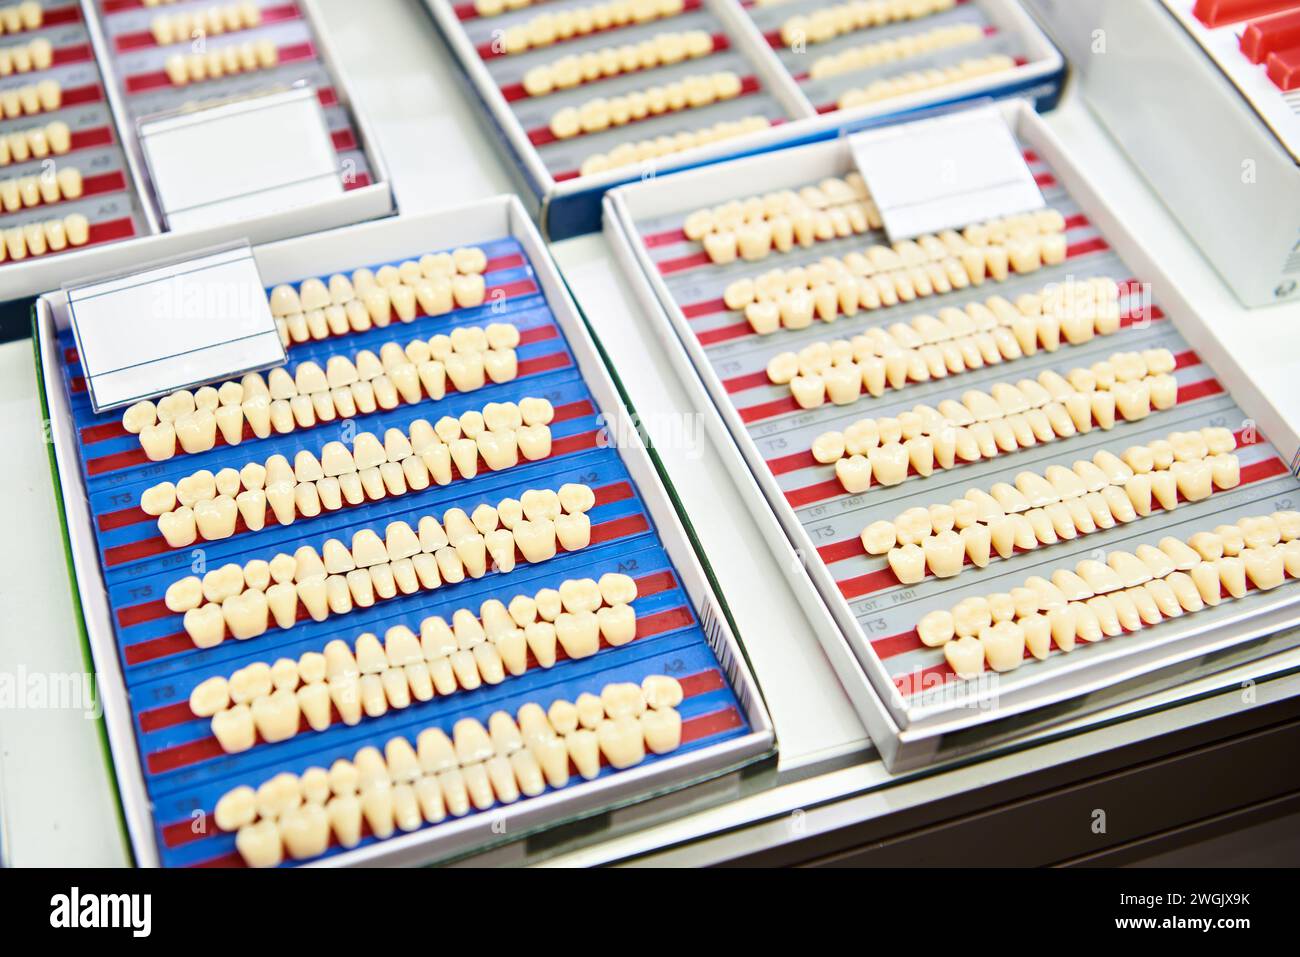 Denti acrilici a doppio strato sul bancone del negozio espositivo Foto Stock